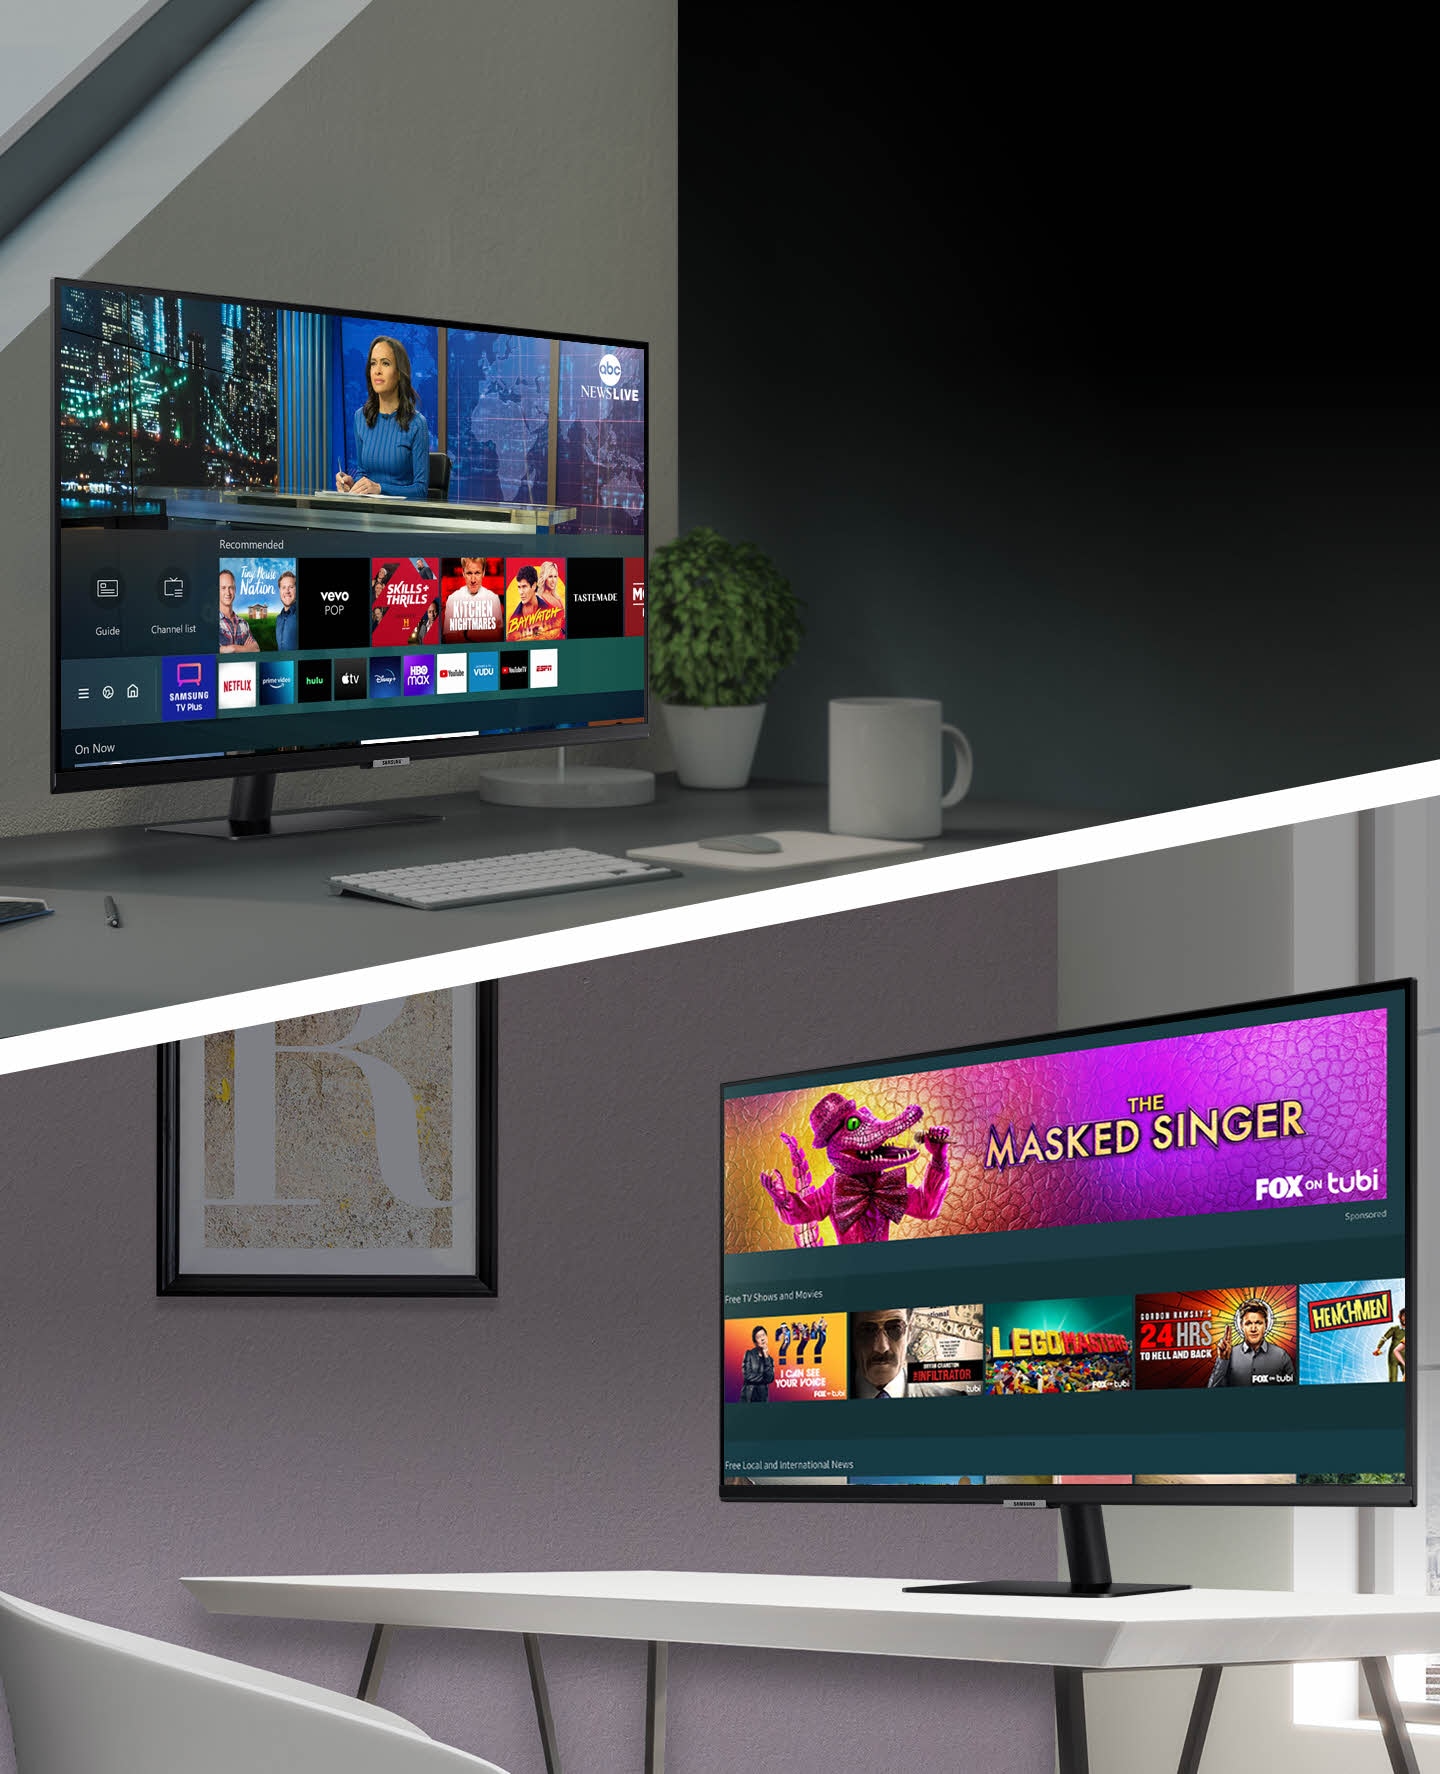 La aplicación Samsung TV Plus se ejecuta en el monitor superior y la Guía universal se ejecuta en el monitor inferior.